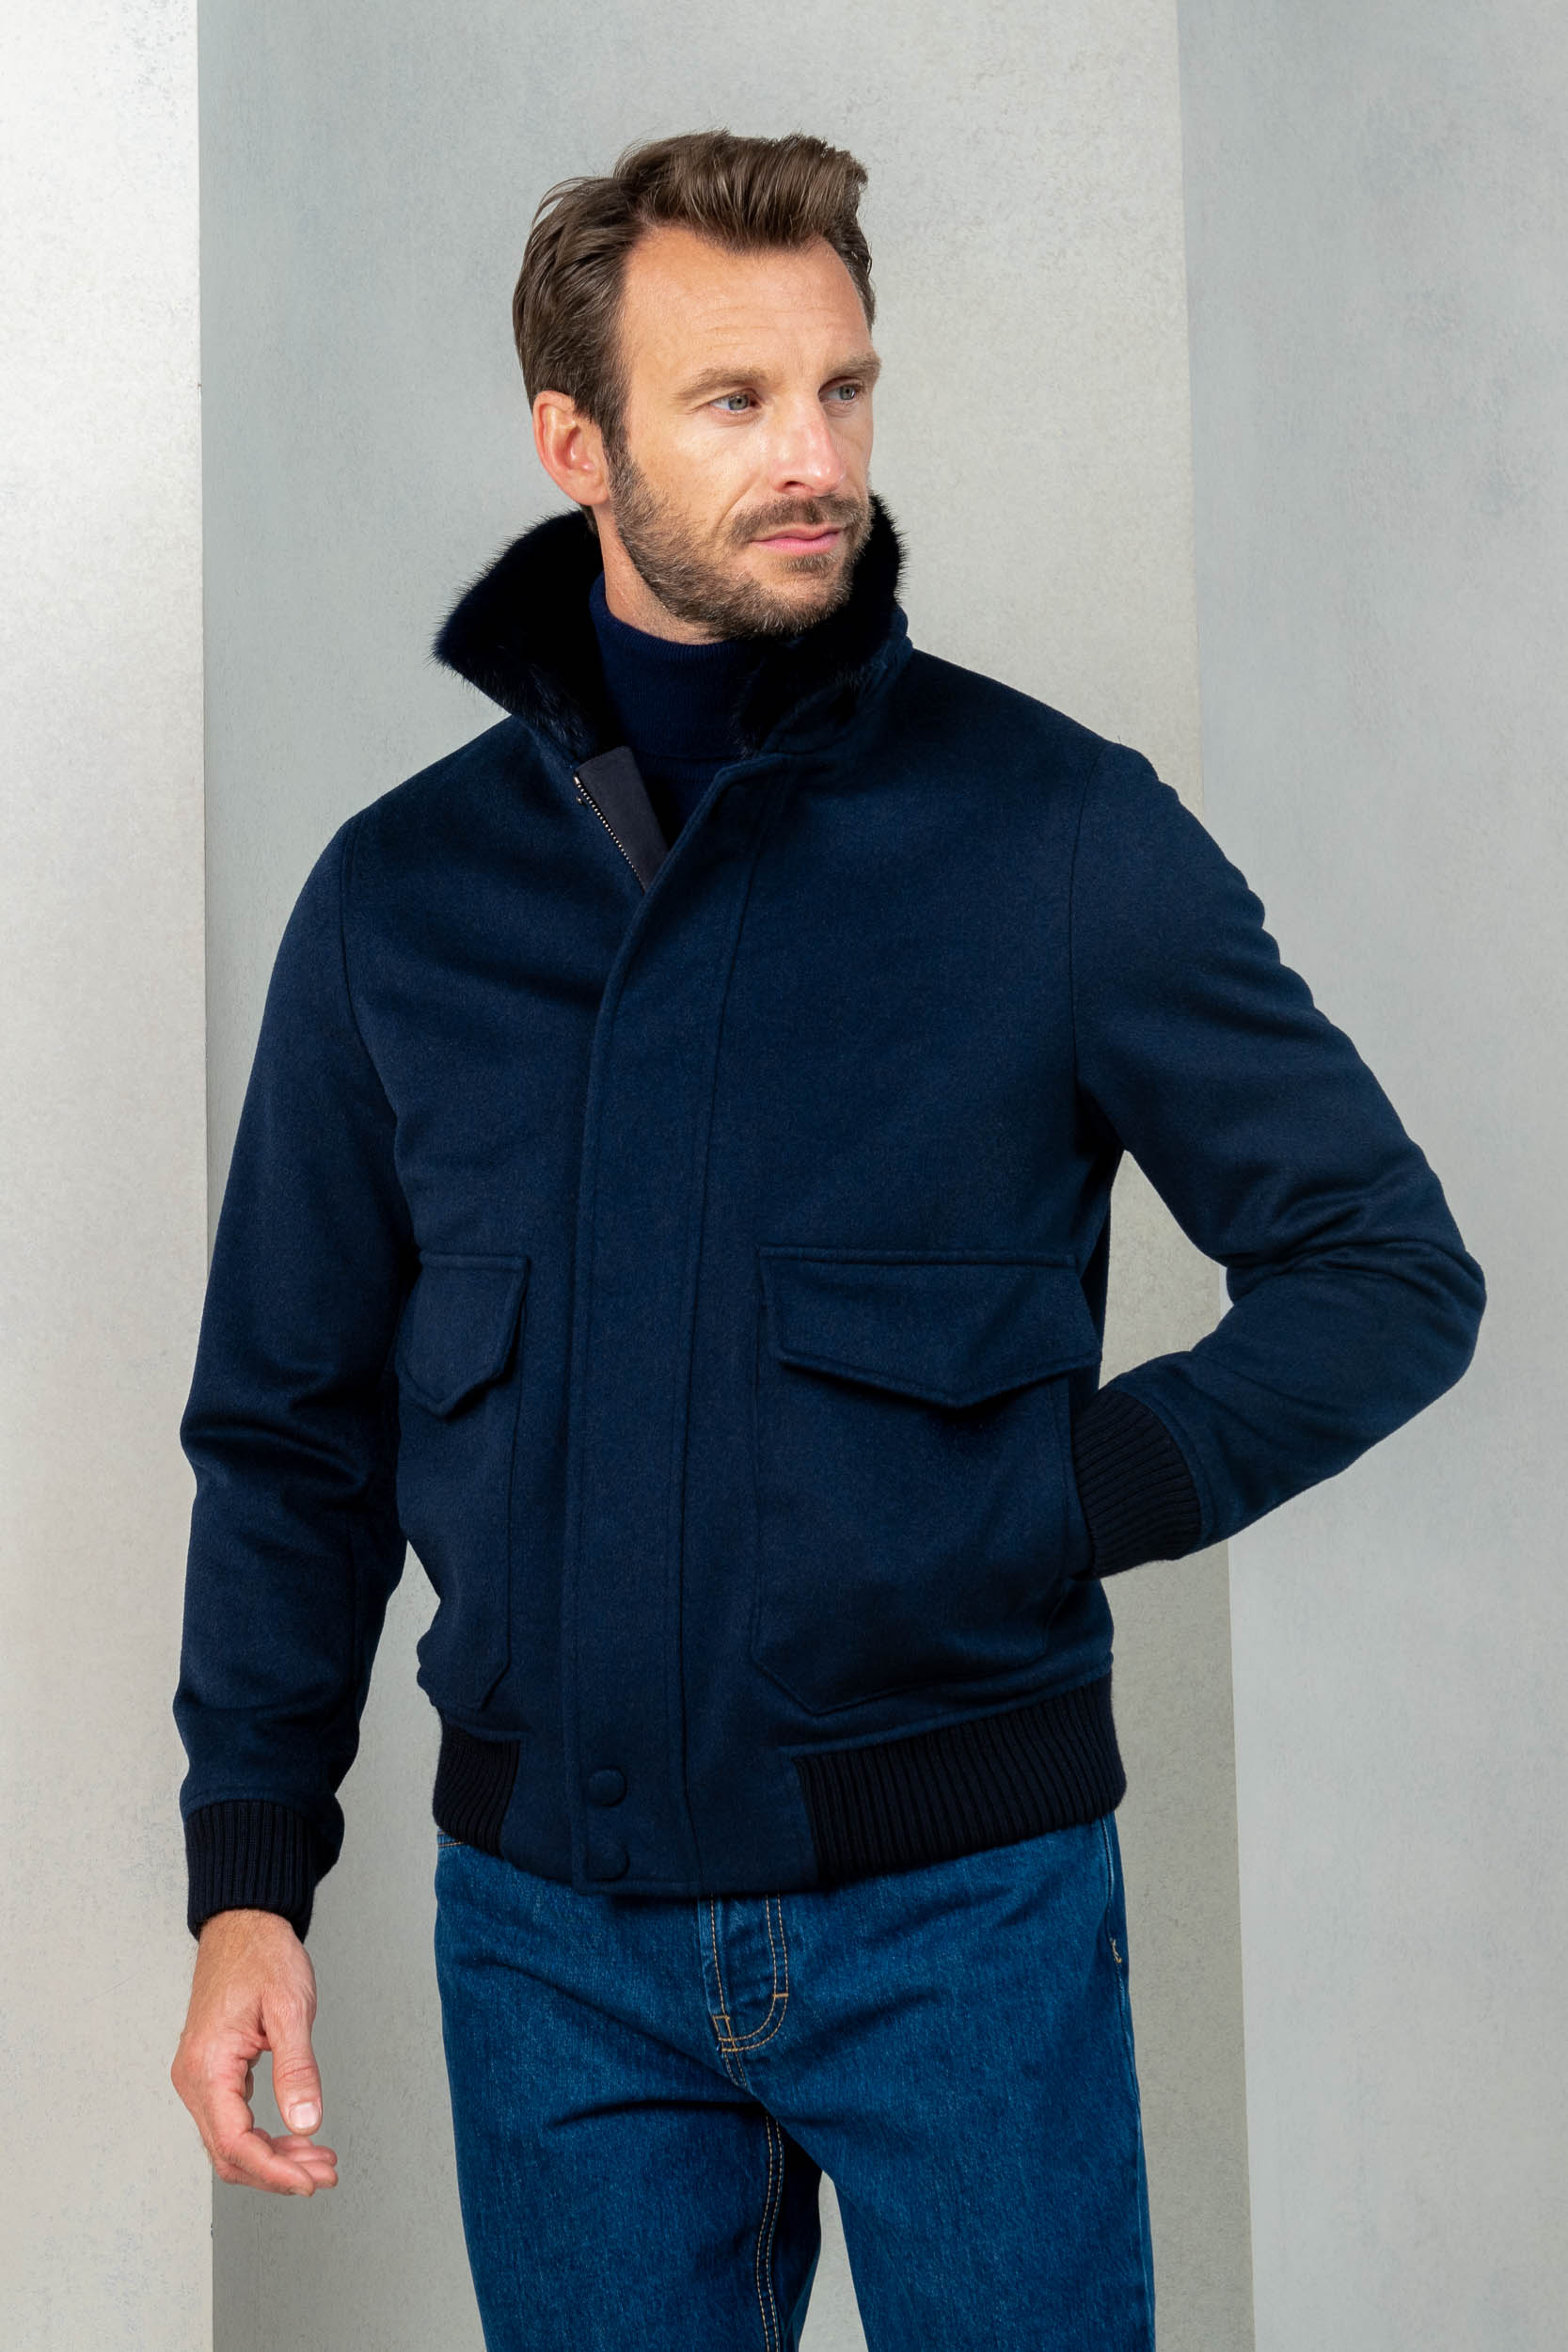 Manteau court bleu avec col en peau retournée amovible – Made in Italy